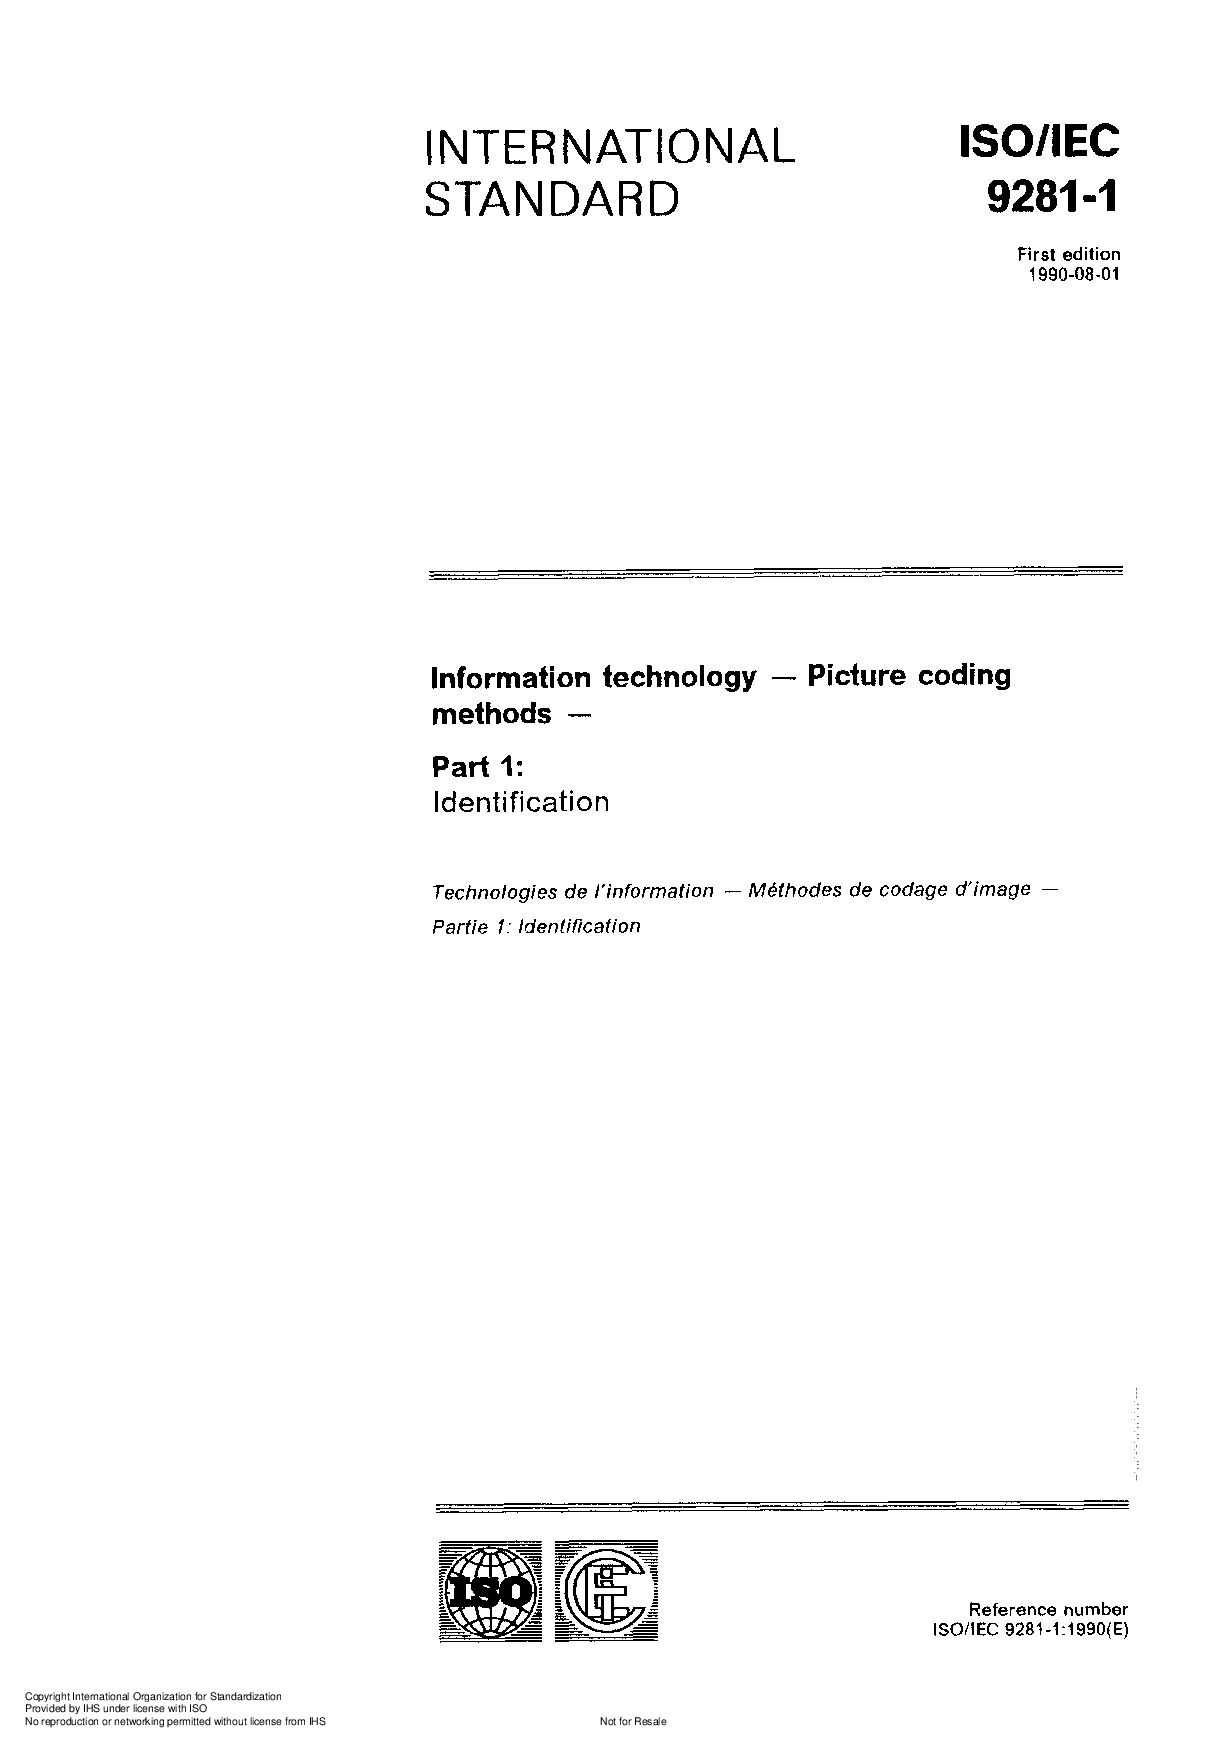 ISO/IEC 9281-1:1990封面图